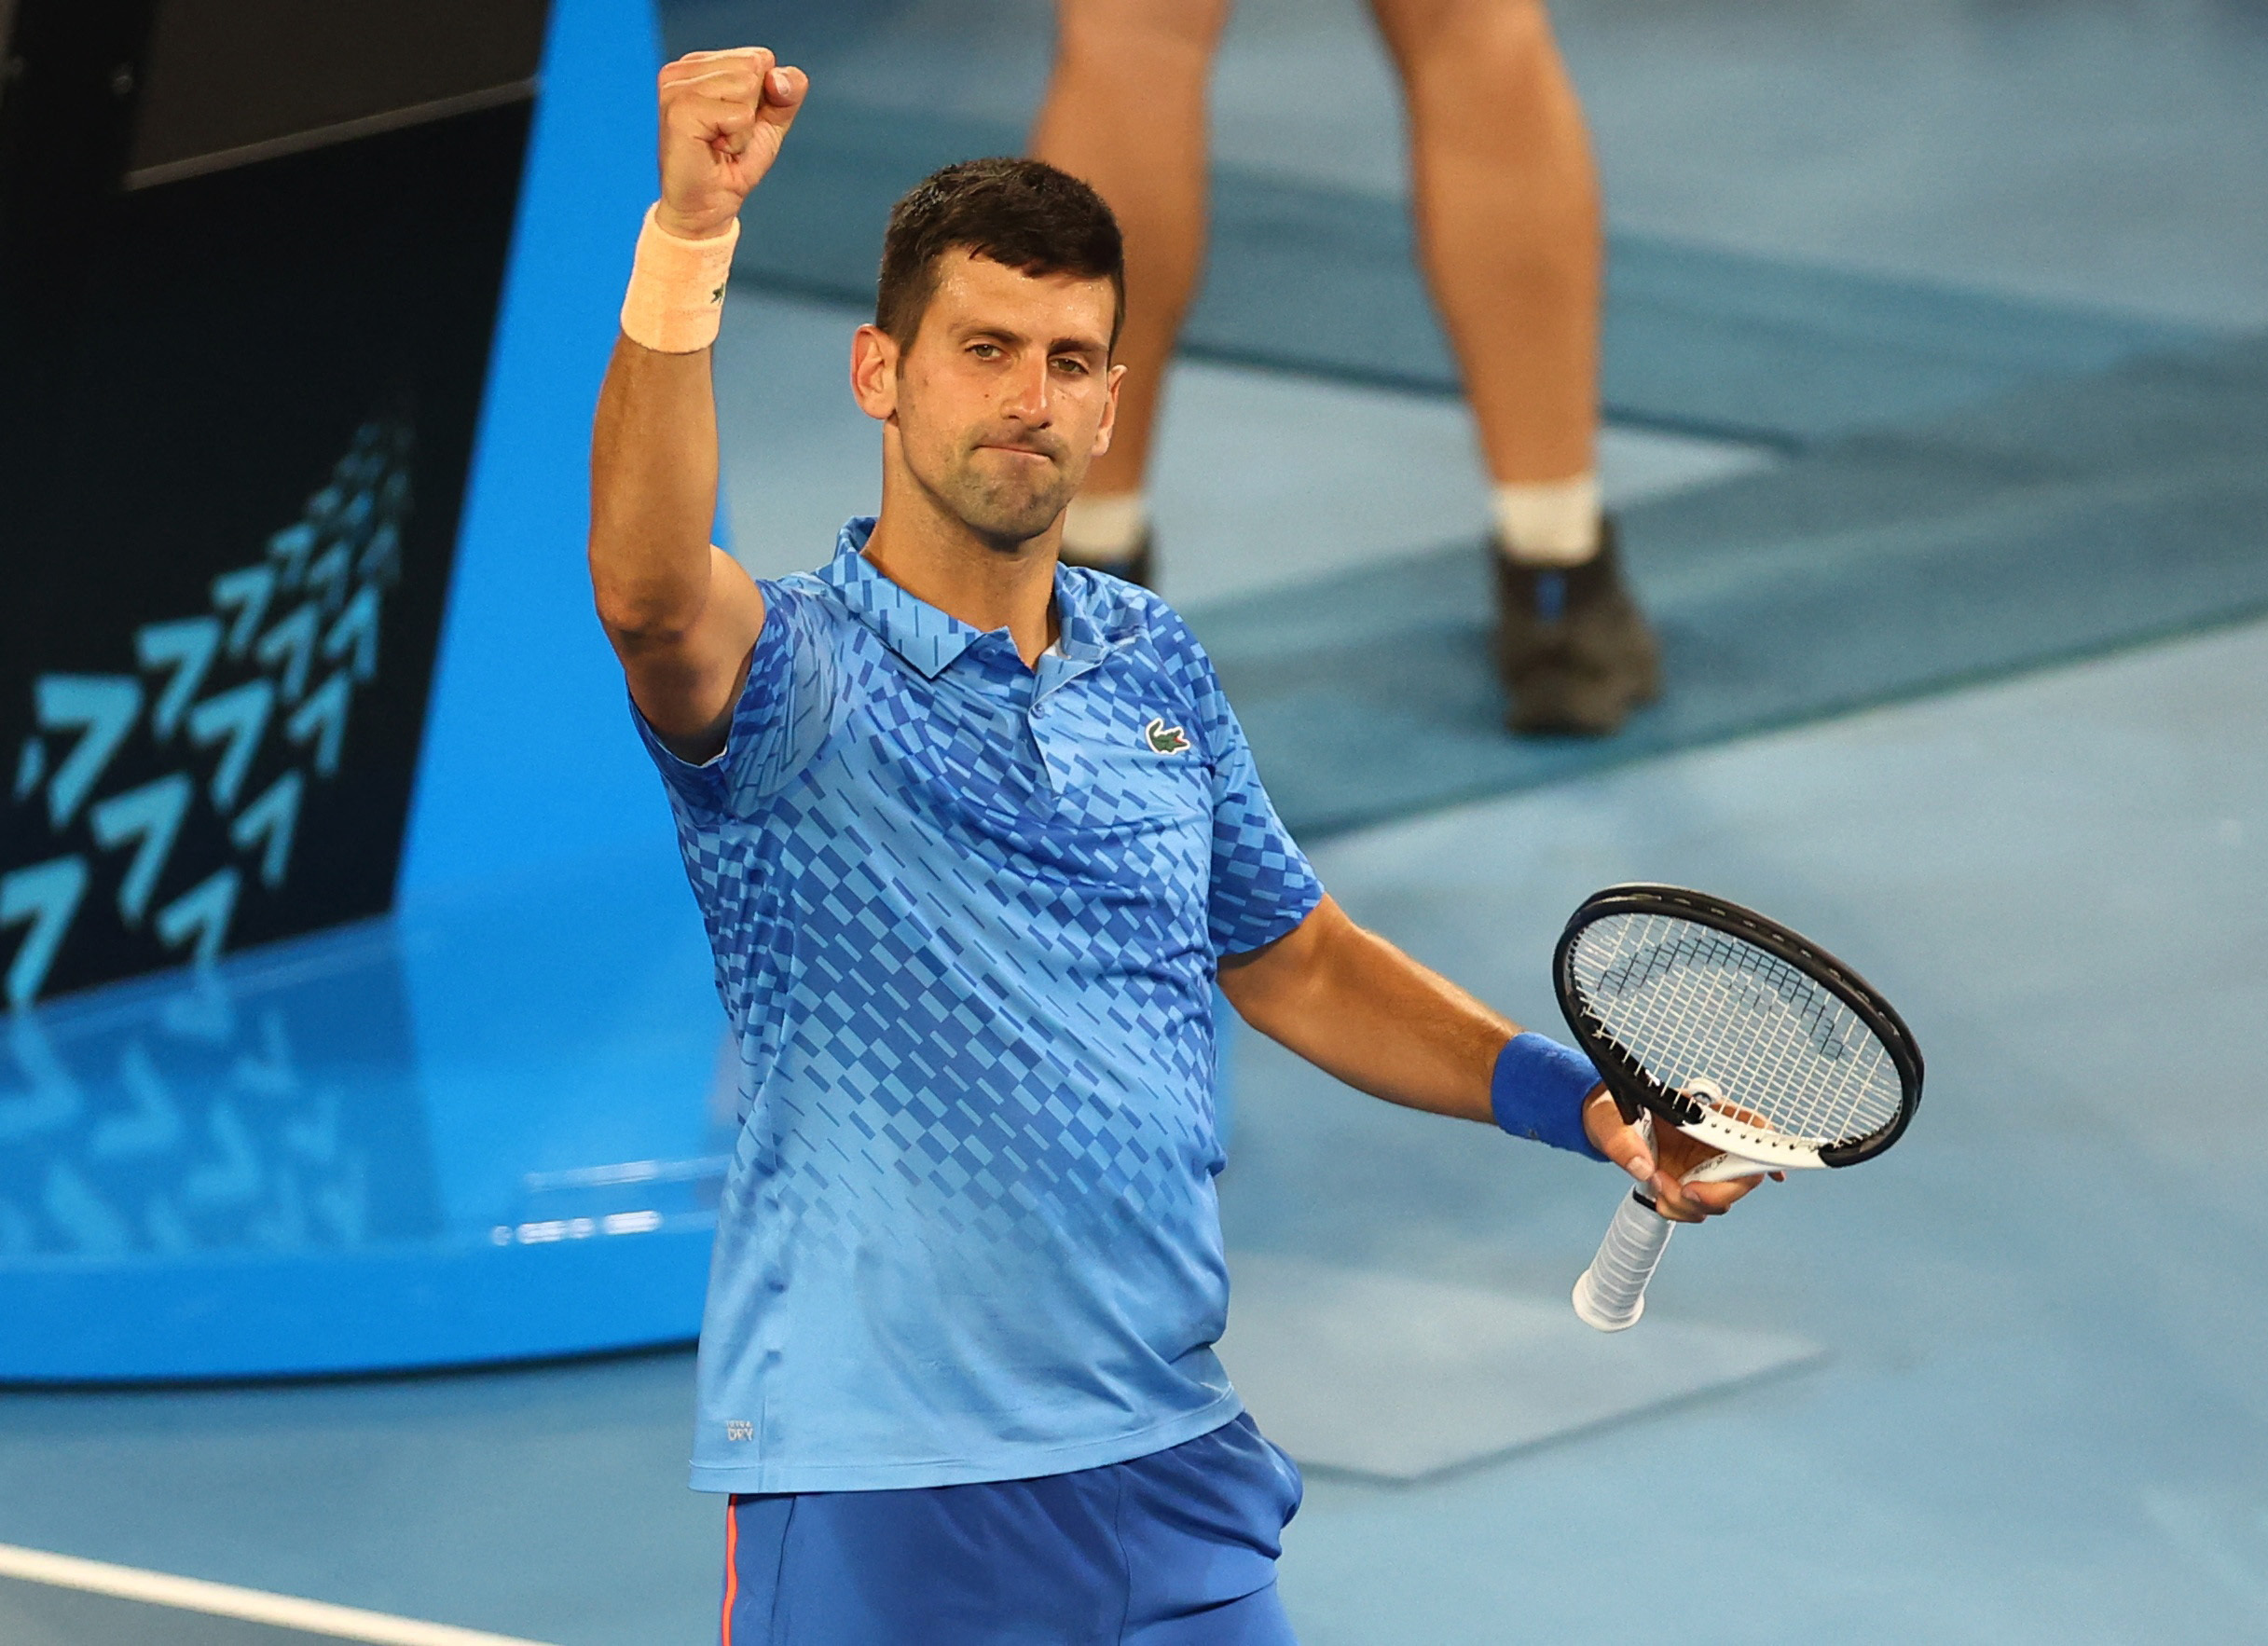 Jornal de Angola - Notícias - Ténis: Djokovic dá show no Open da Austrália